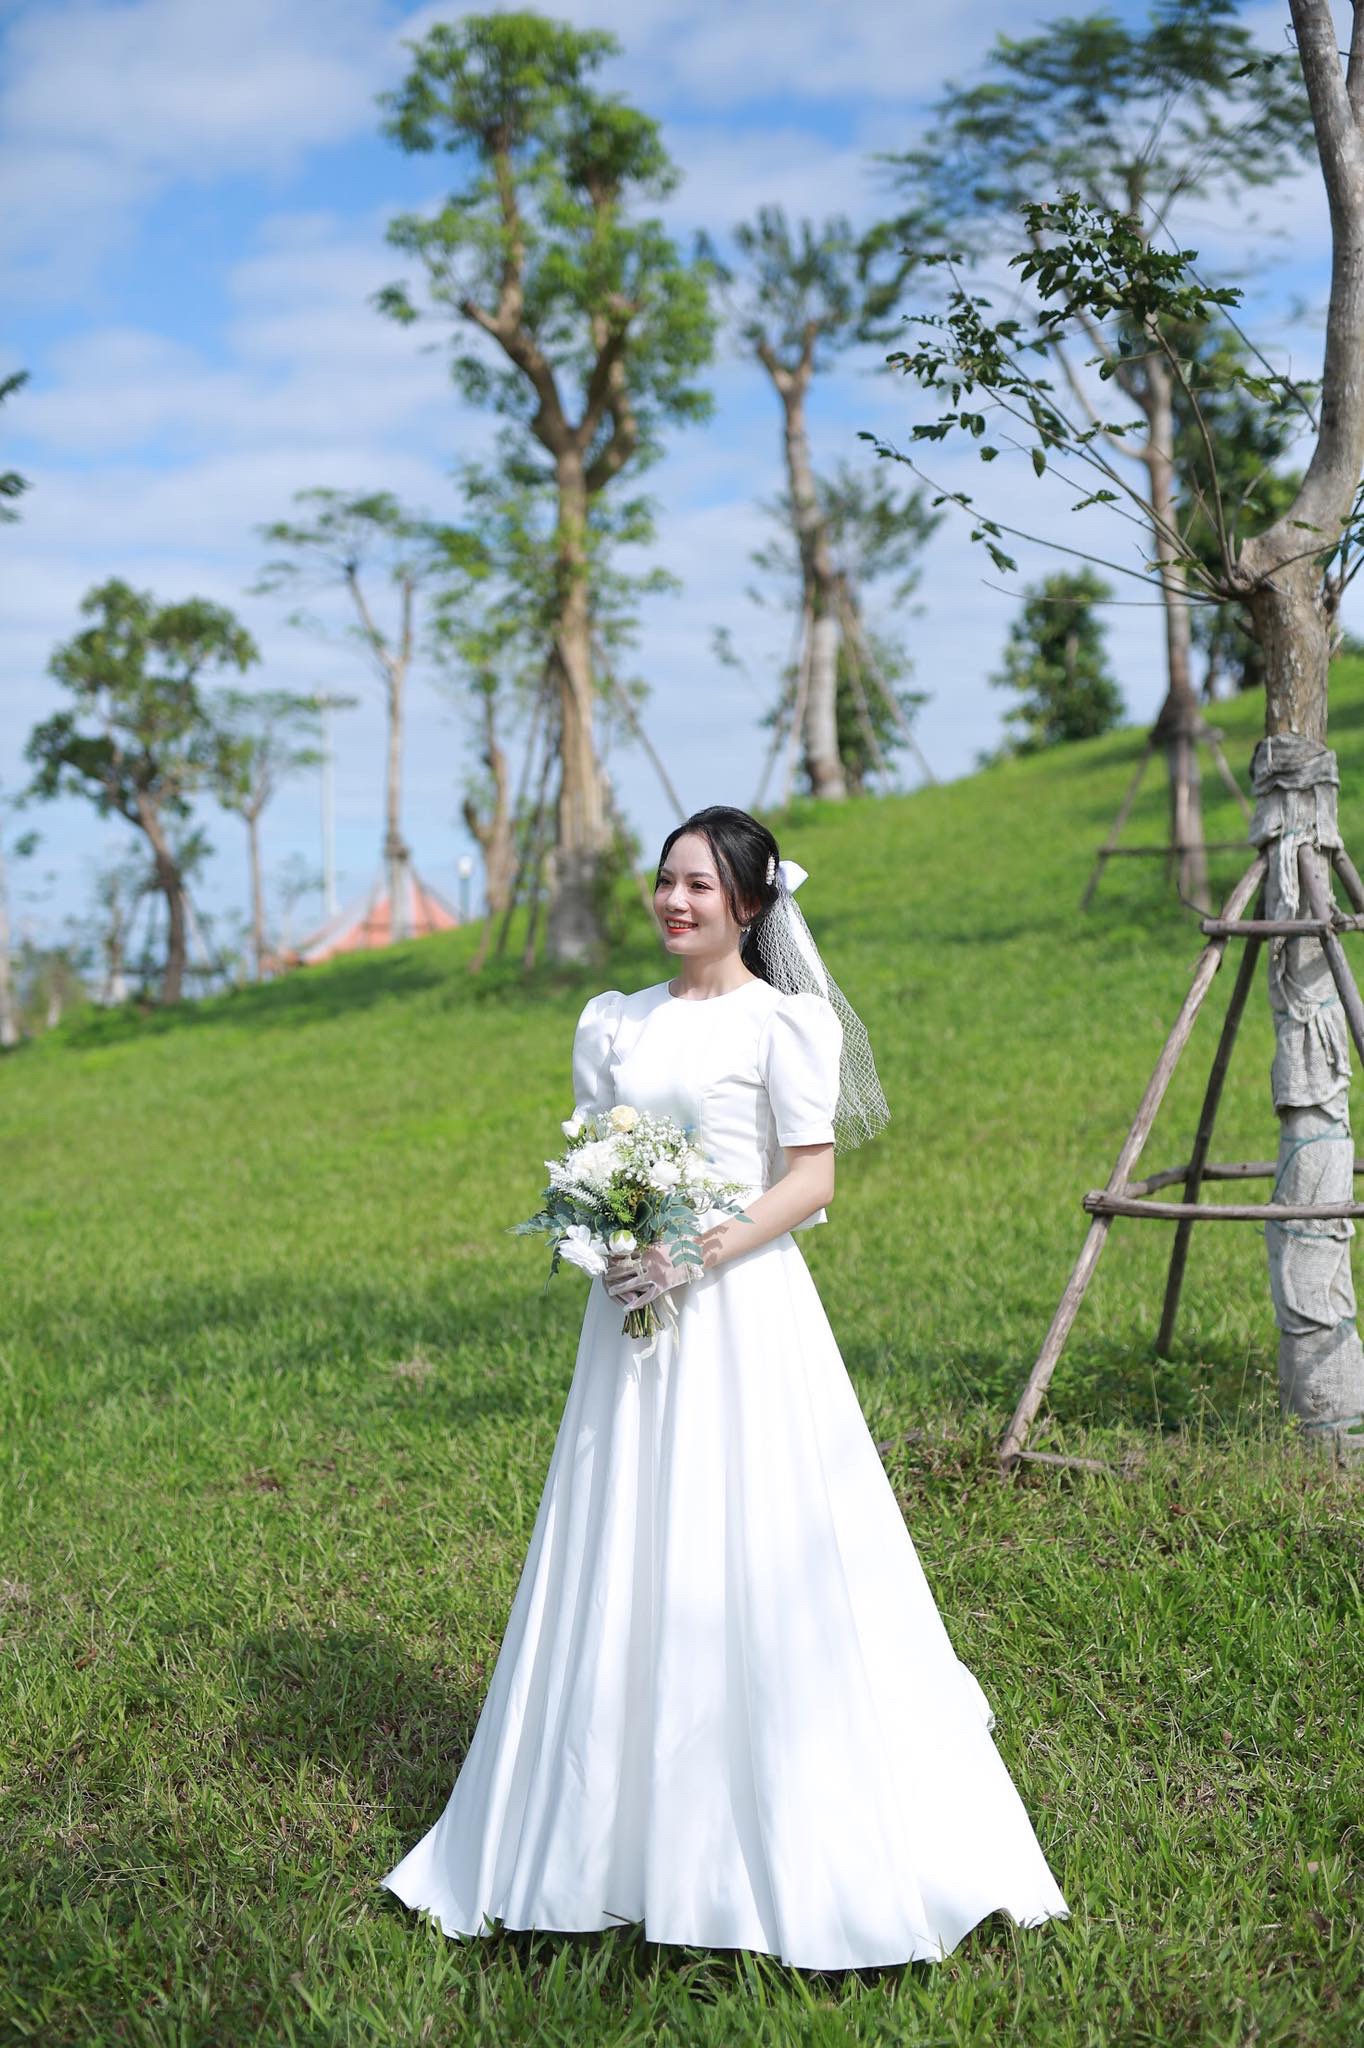 Sau đám cưới Hà Tăng, sao thi đua mặc váy cô dâu